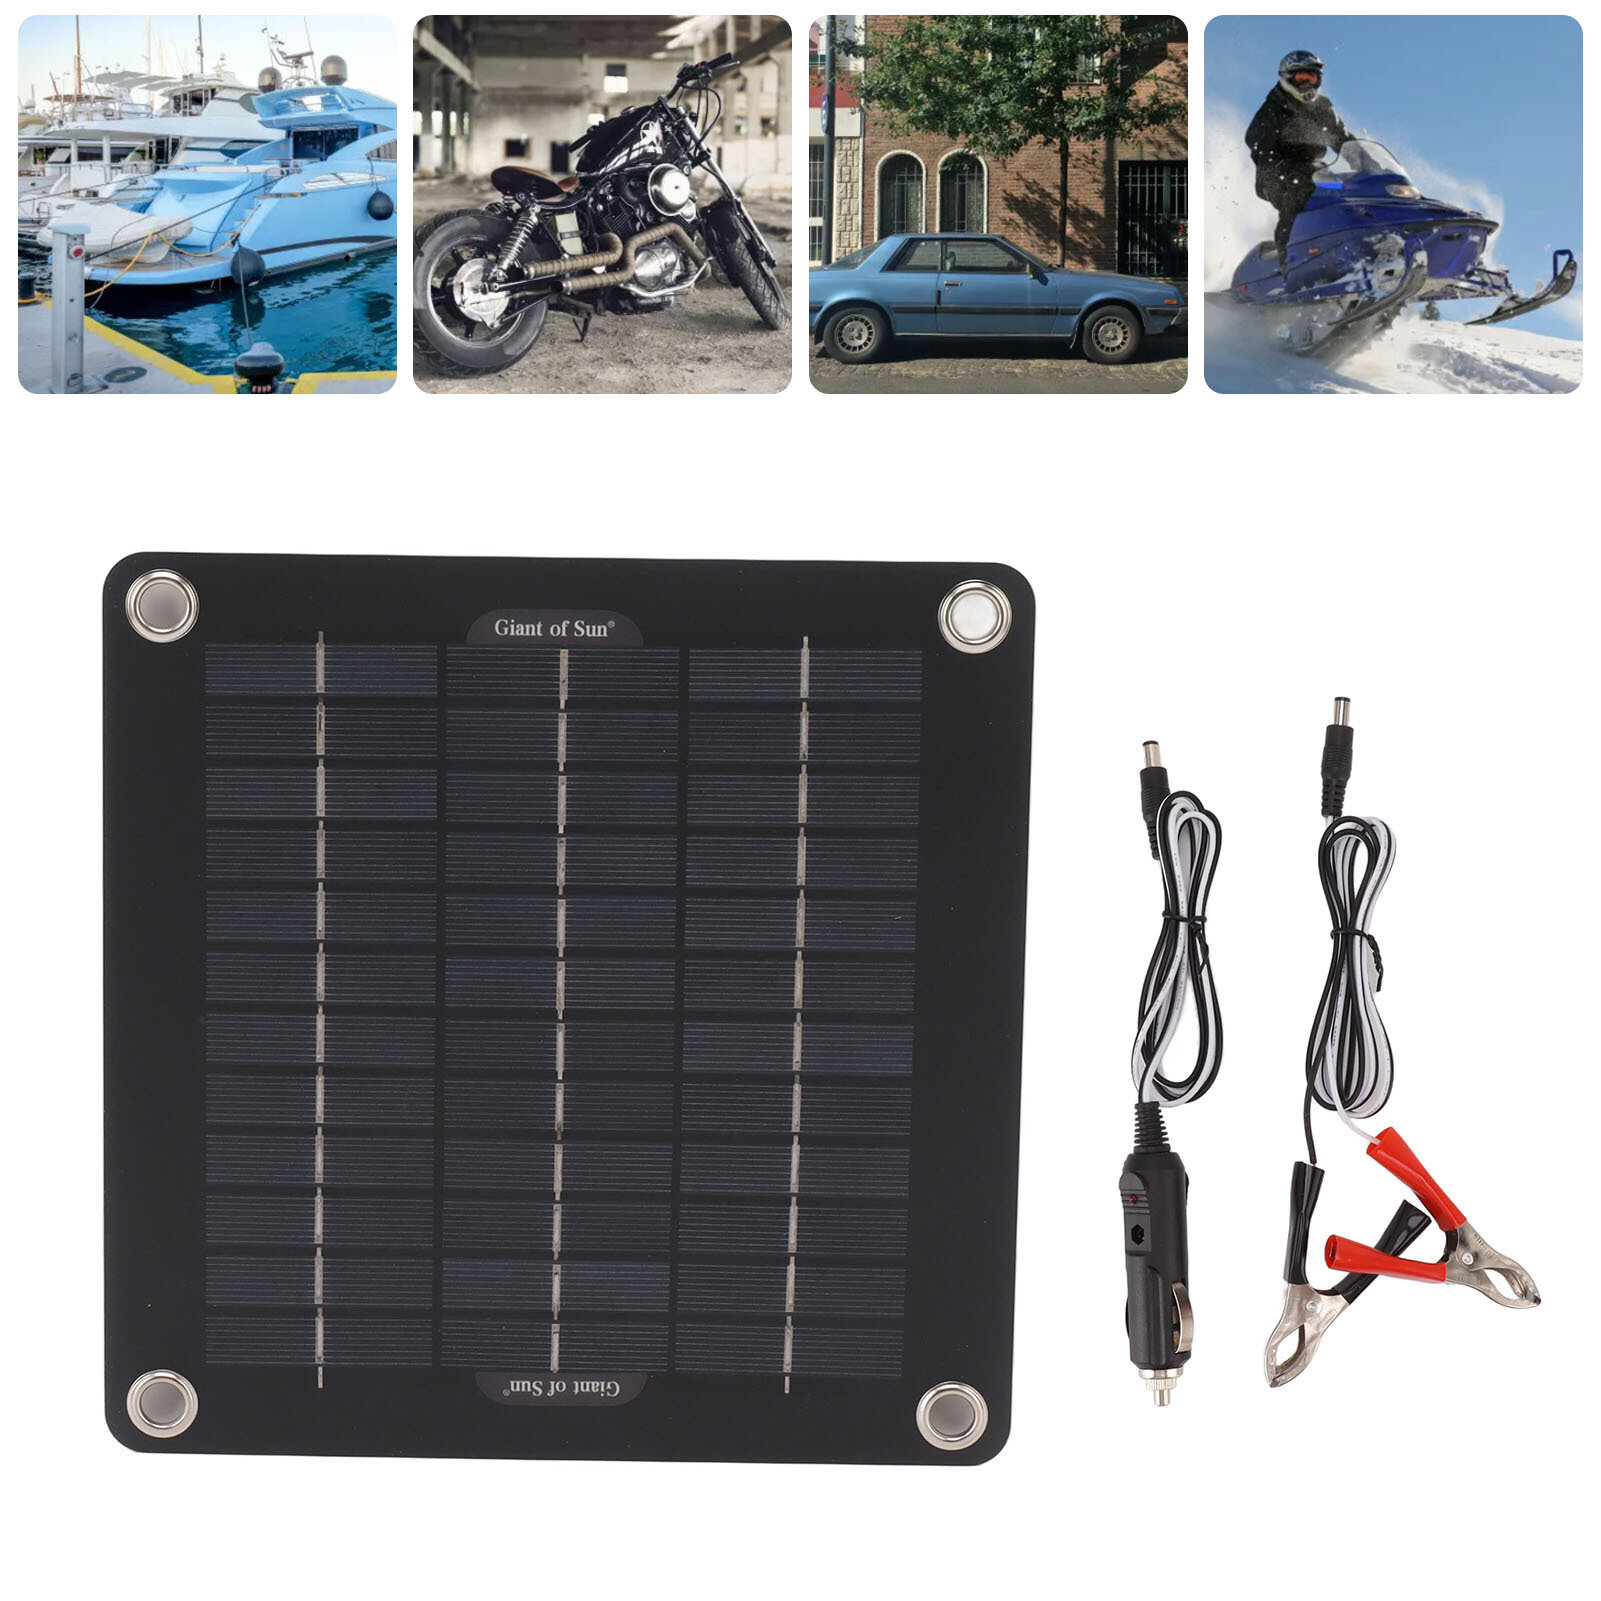 

10W Солнечная Panel 5V USB Солнечная Cell Portable Водонепроницаемы Солнечная Panel Charger На открытом воздухе Mobile P